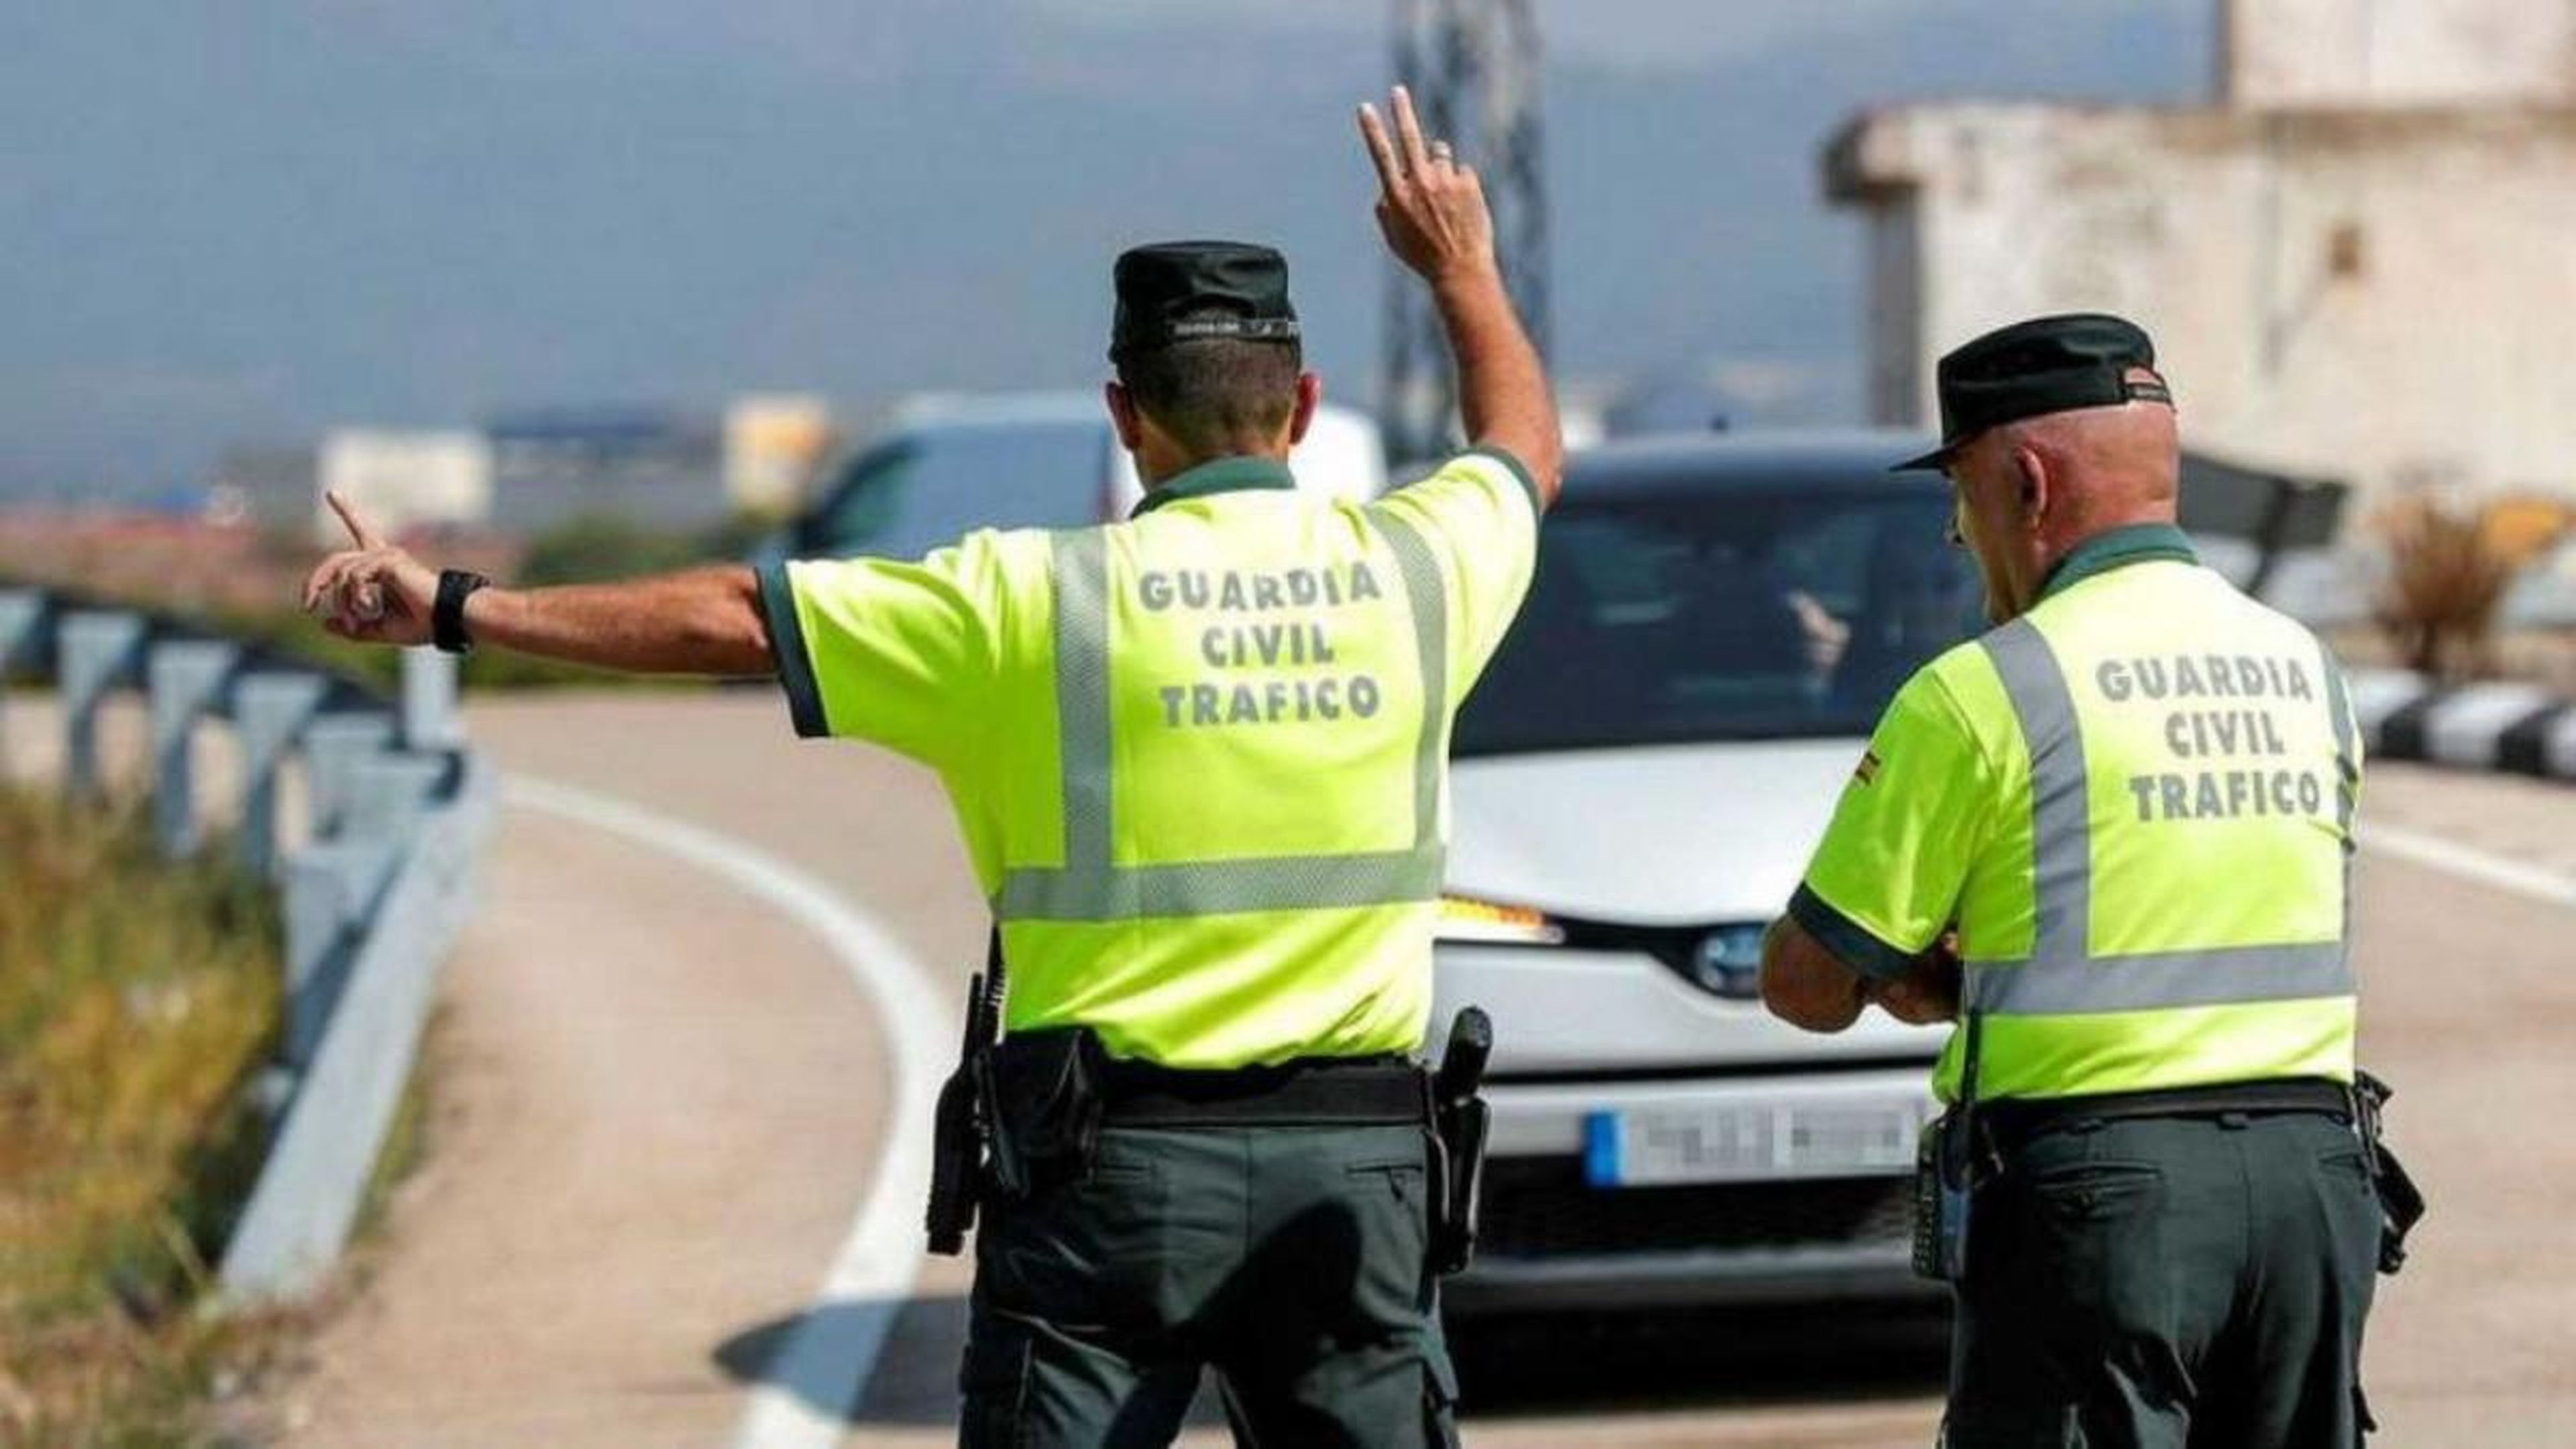 La Guardia Civil te cuenta el sencillo gesto que puede salvar vidas